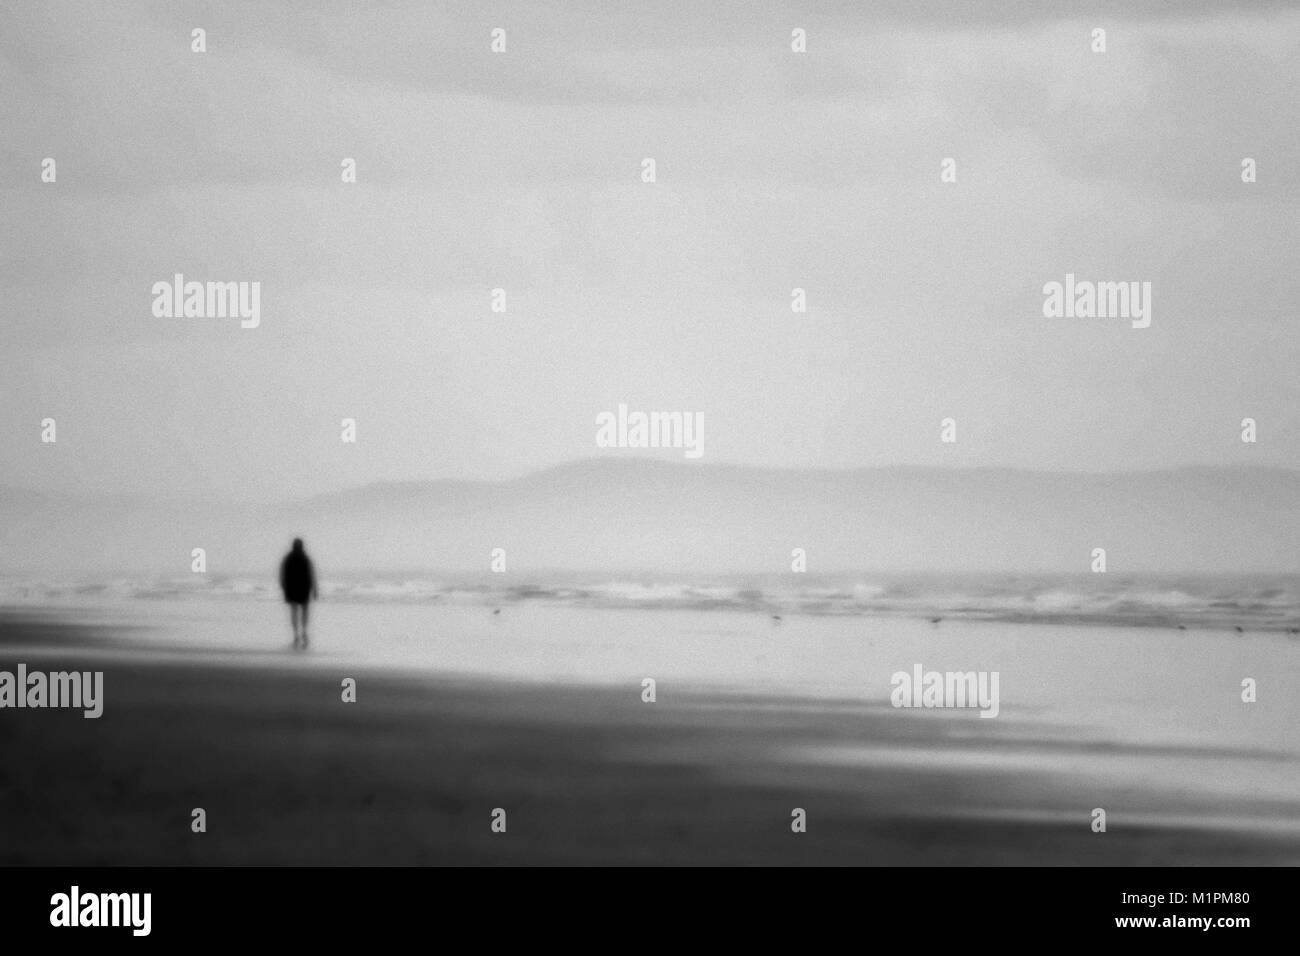 Una foto en blanco y negro de una persona caminando por la playa justo antes del amanecer. Foto de stock